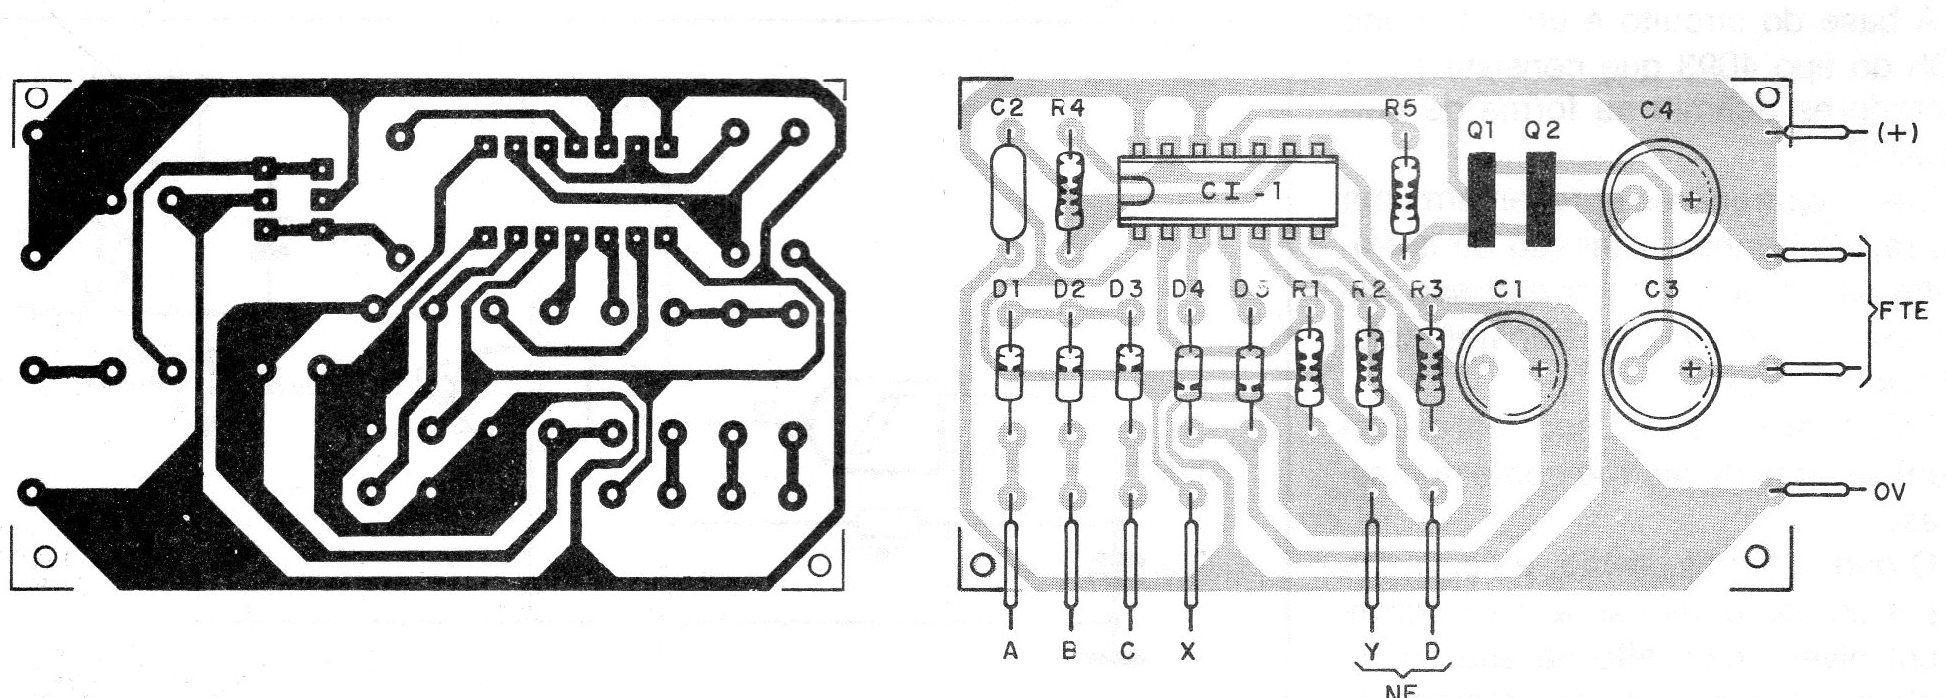    Figura 4 – placa de circuito impresso
